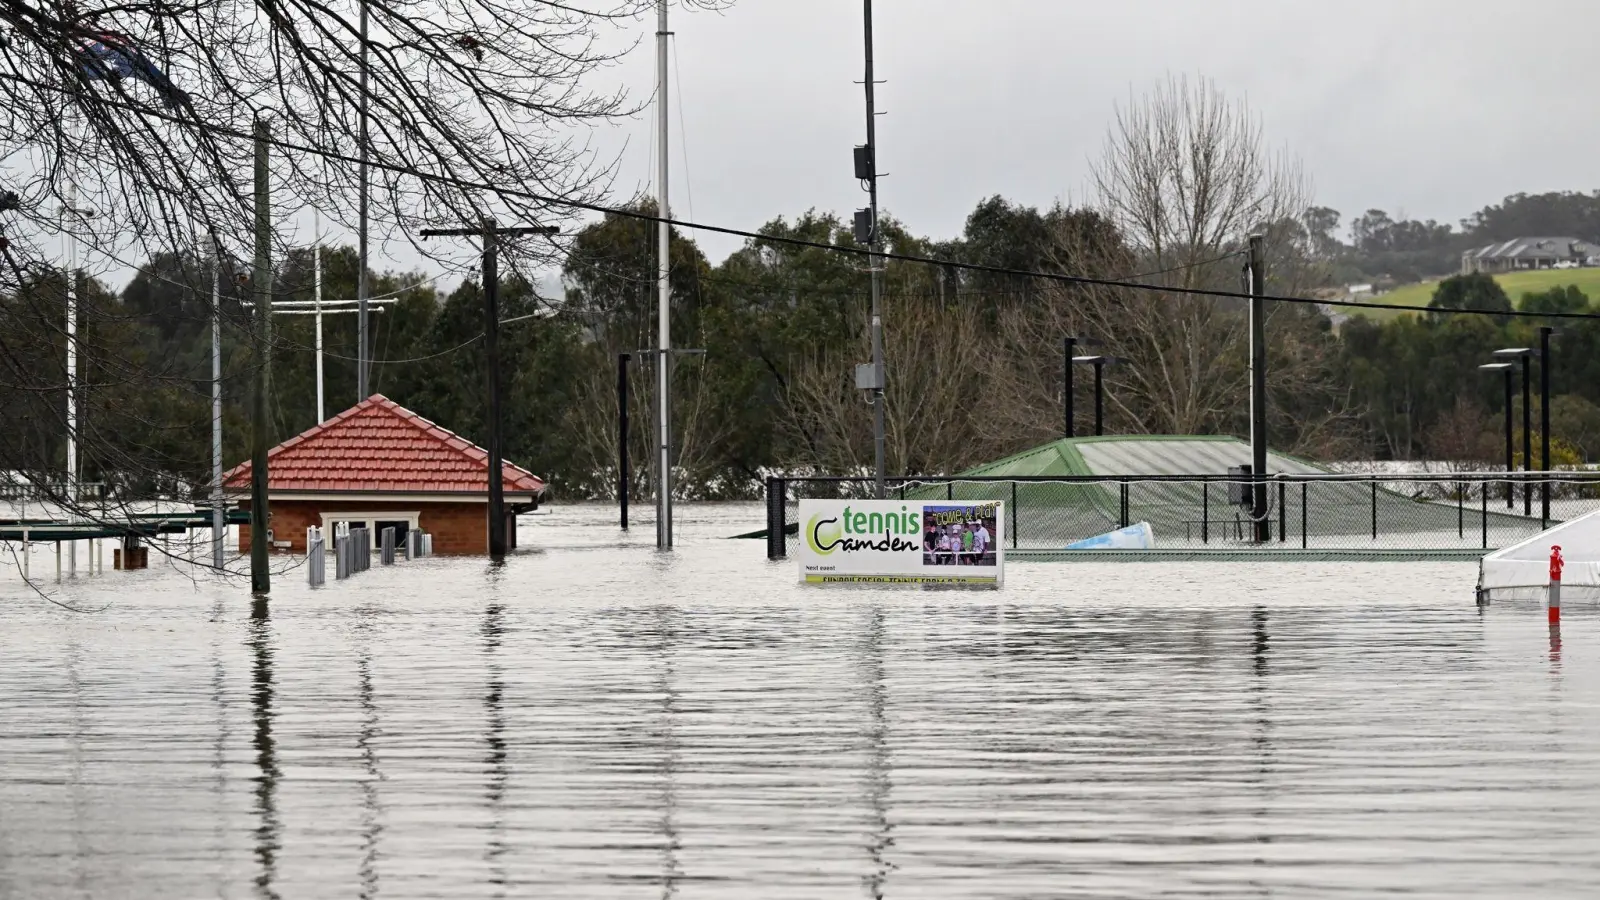 Sydney kämpft mit Überschwemmungen - die Folgen könnten noch verheerender sein als im März. (Foto: Mick Tsikas/AAP/dpa)